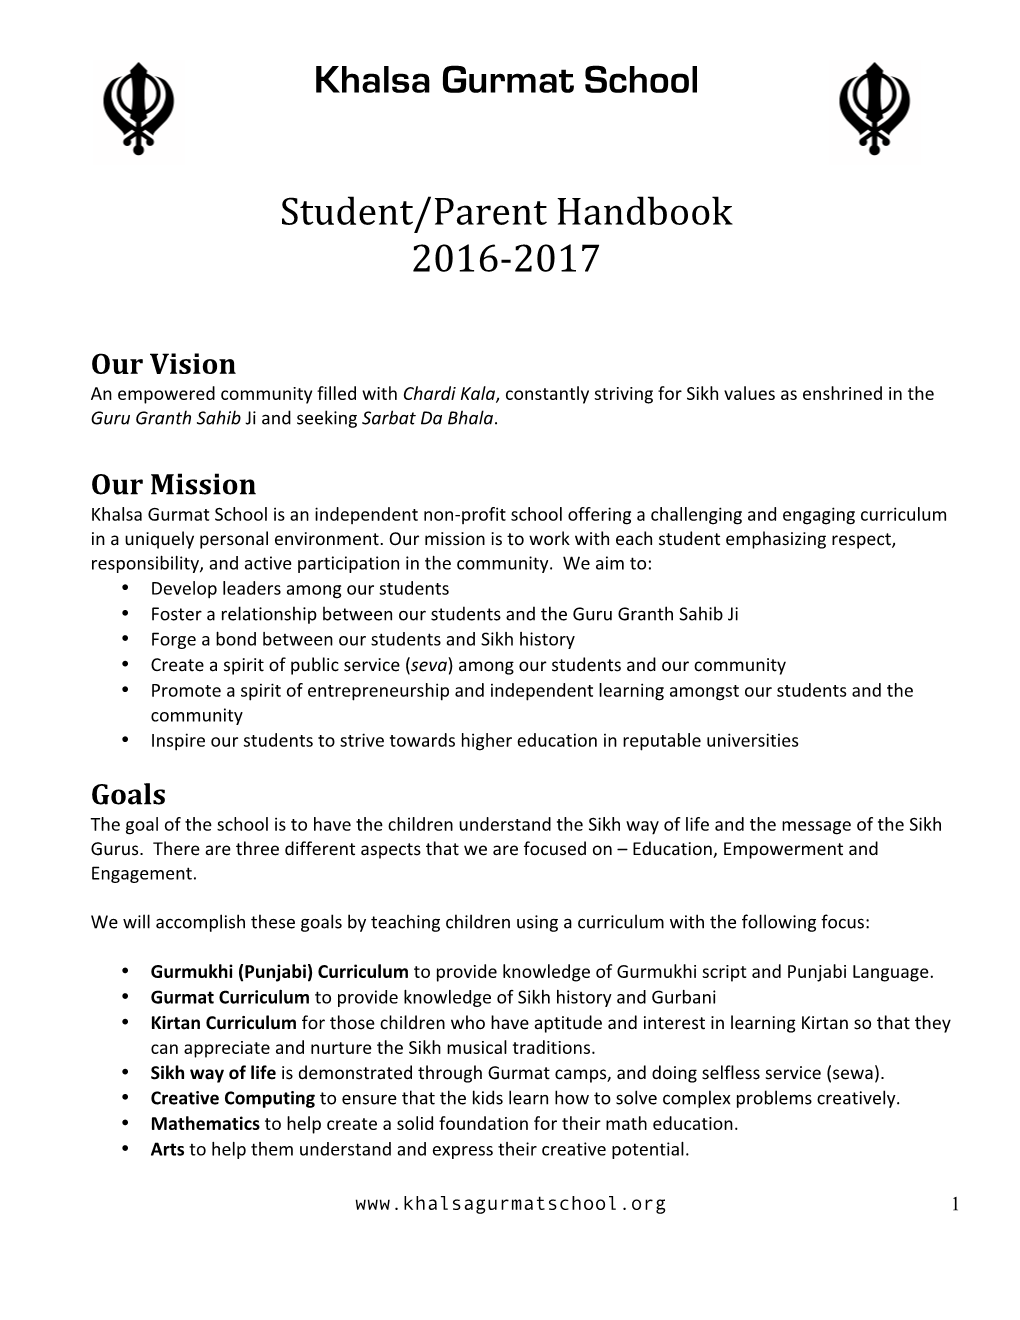 Khalsa Gurmat School Student/Parent Handbook 2016-2017